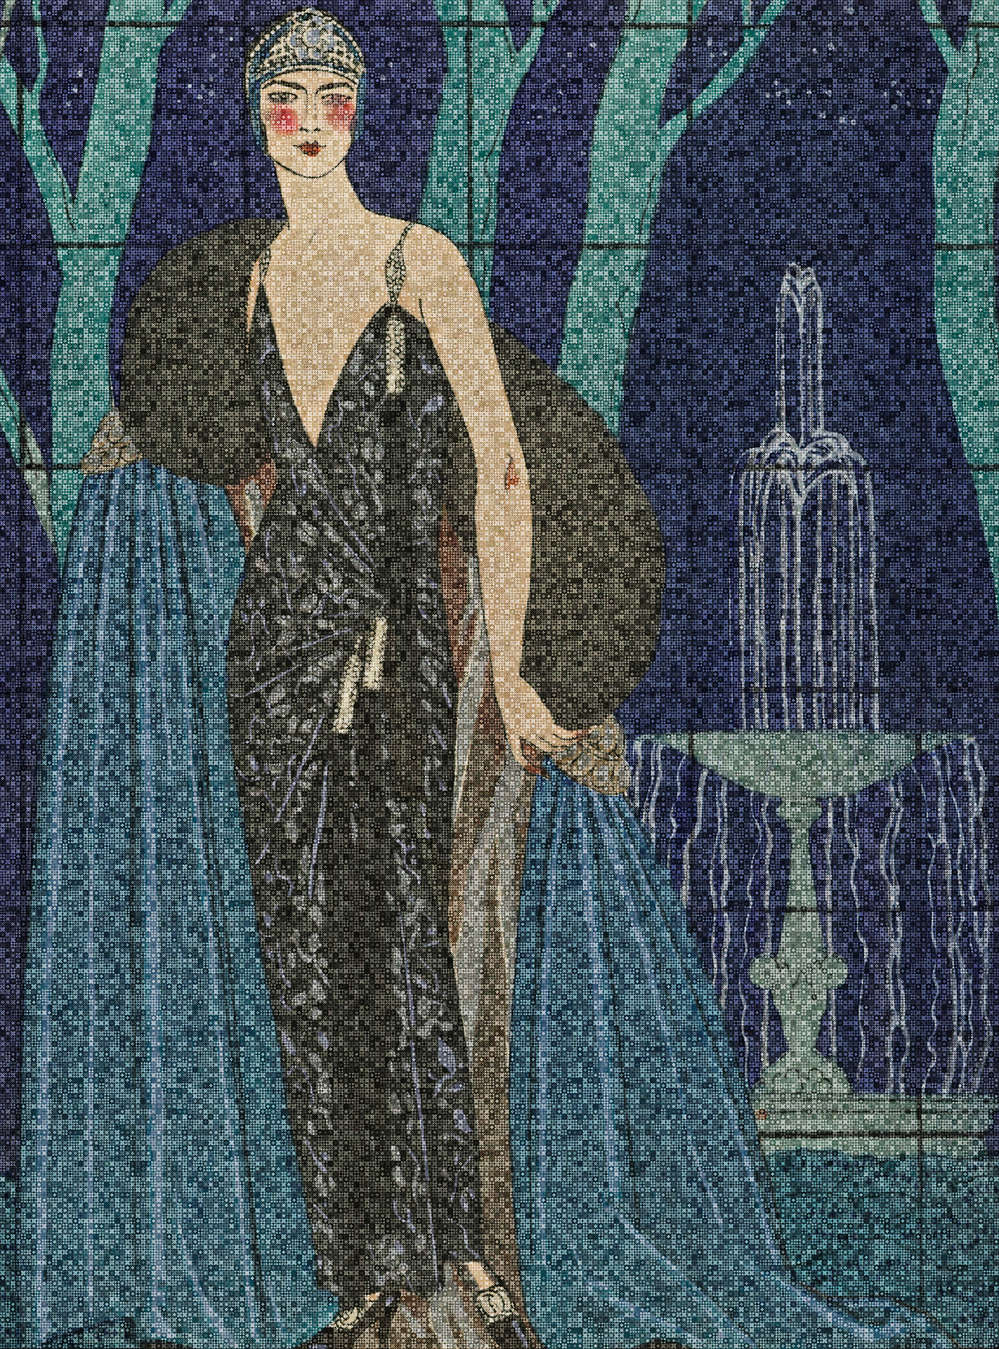             Scala 3 - Art Deco mural elegant women motif
        